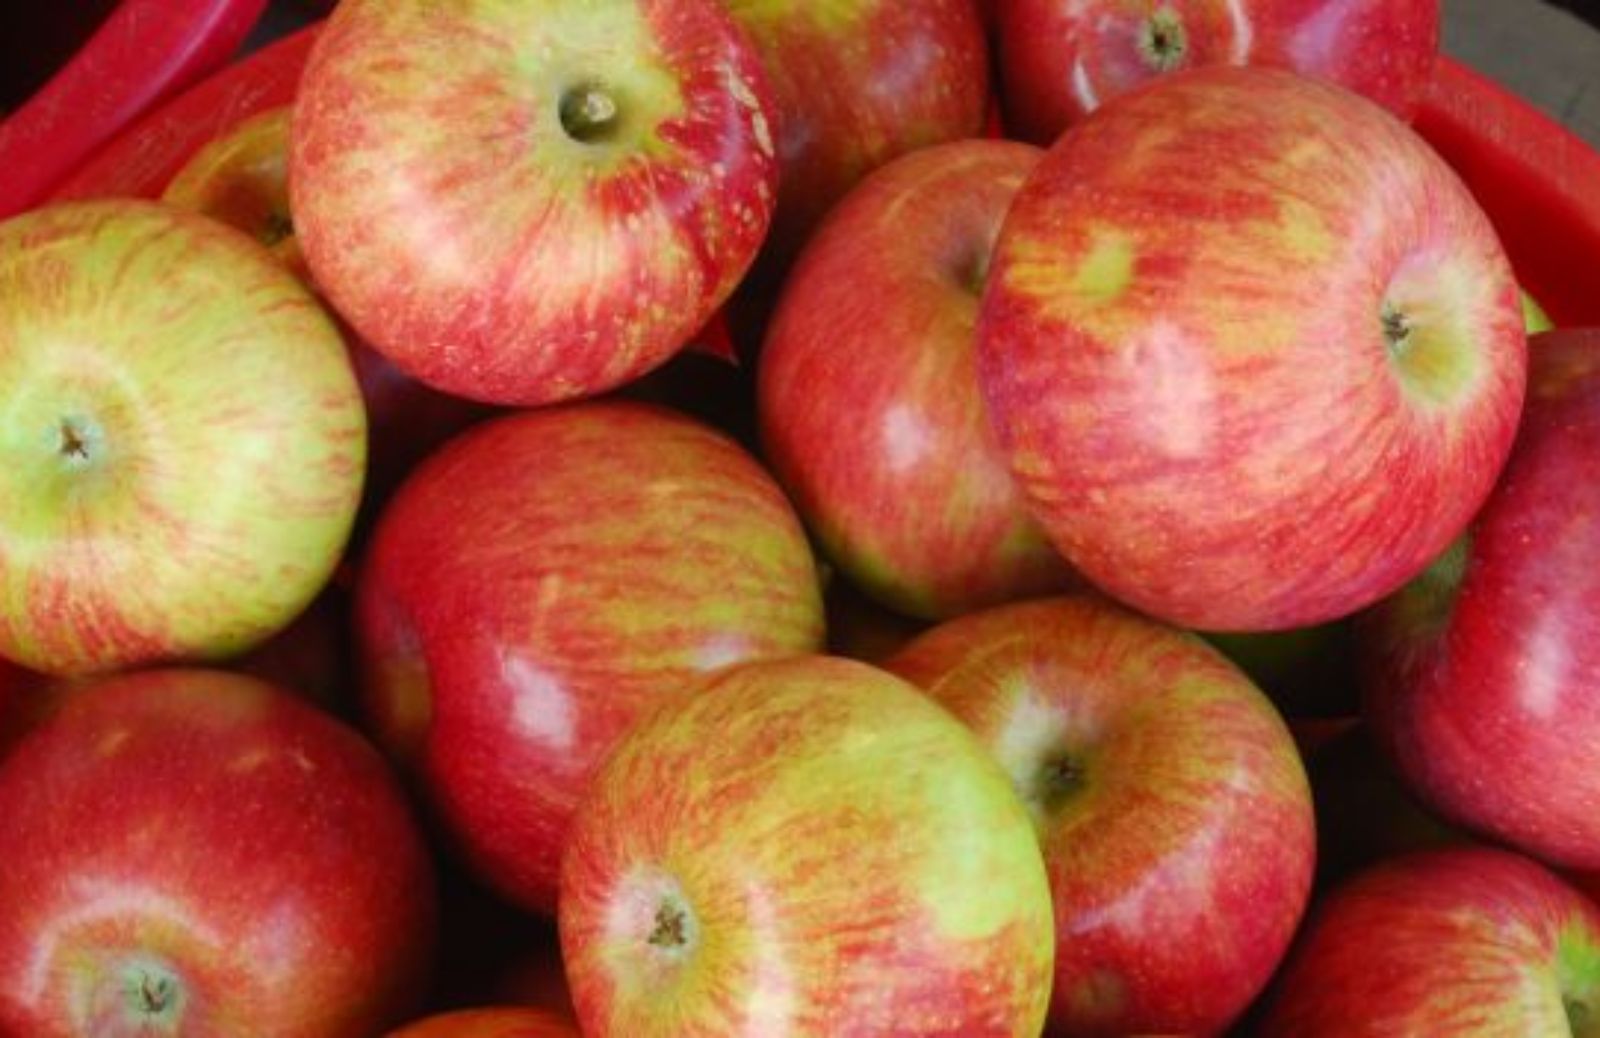 Come scegliere mele naturali e sane